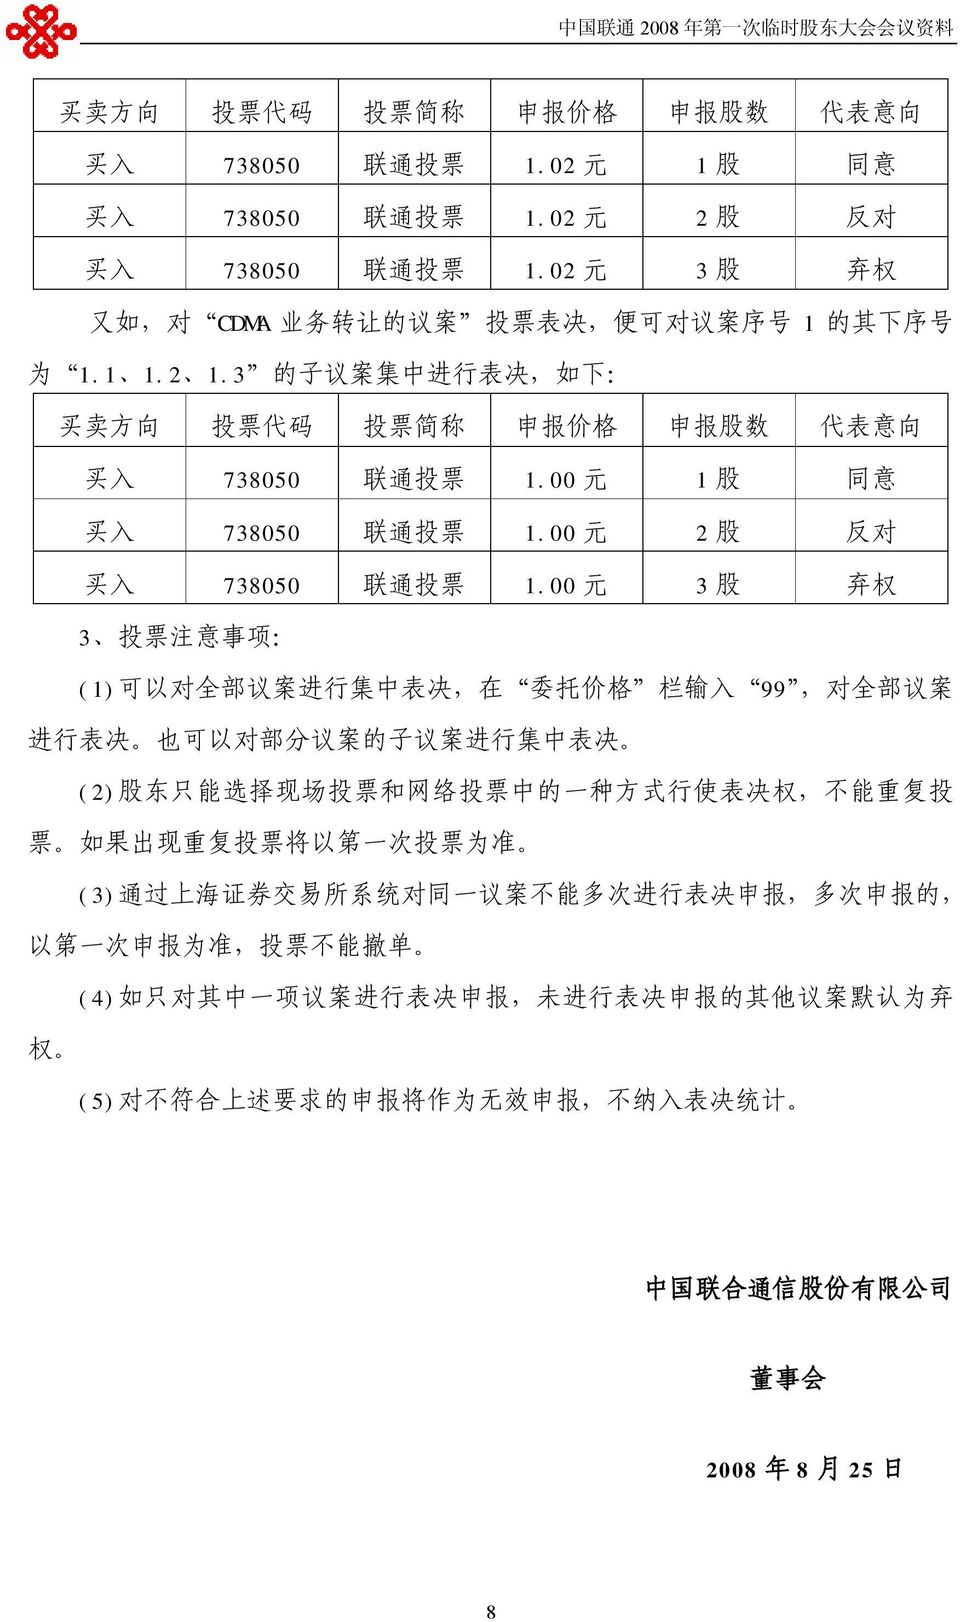 00 元 1 股 同 意 买 入 738050 联 通 投 票 1.00 元 2 股 反 对 买 入 738050 联 通 投 票 1.